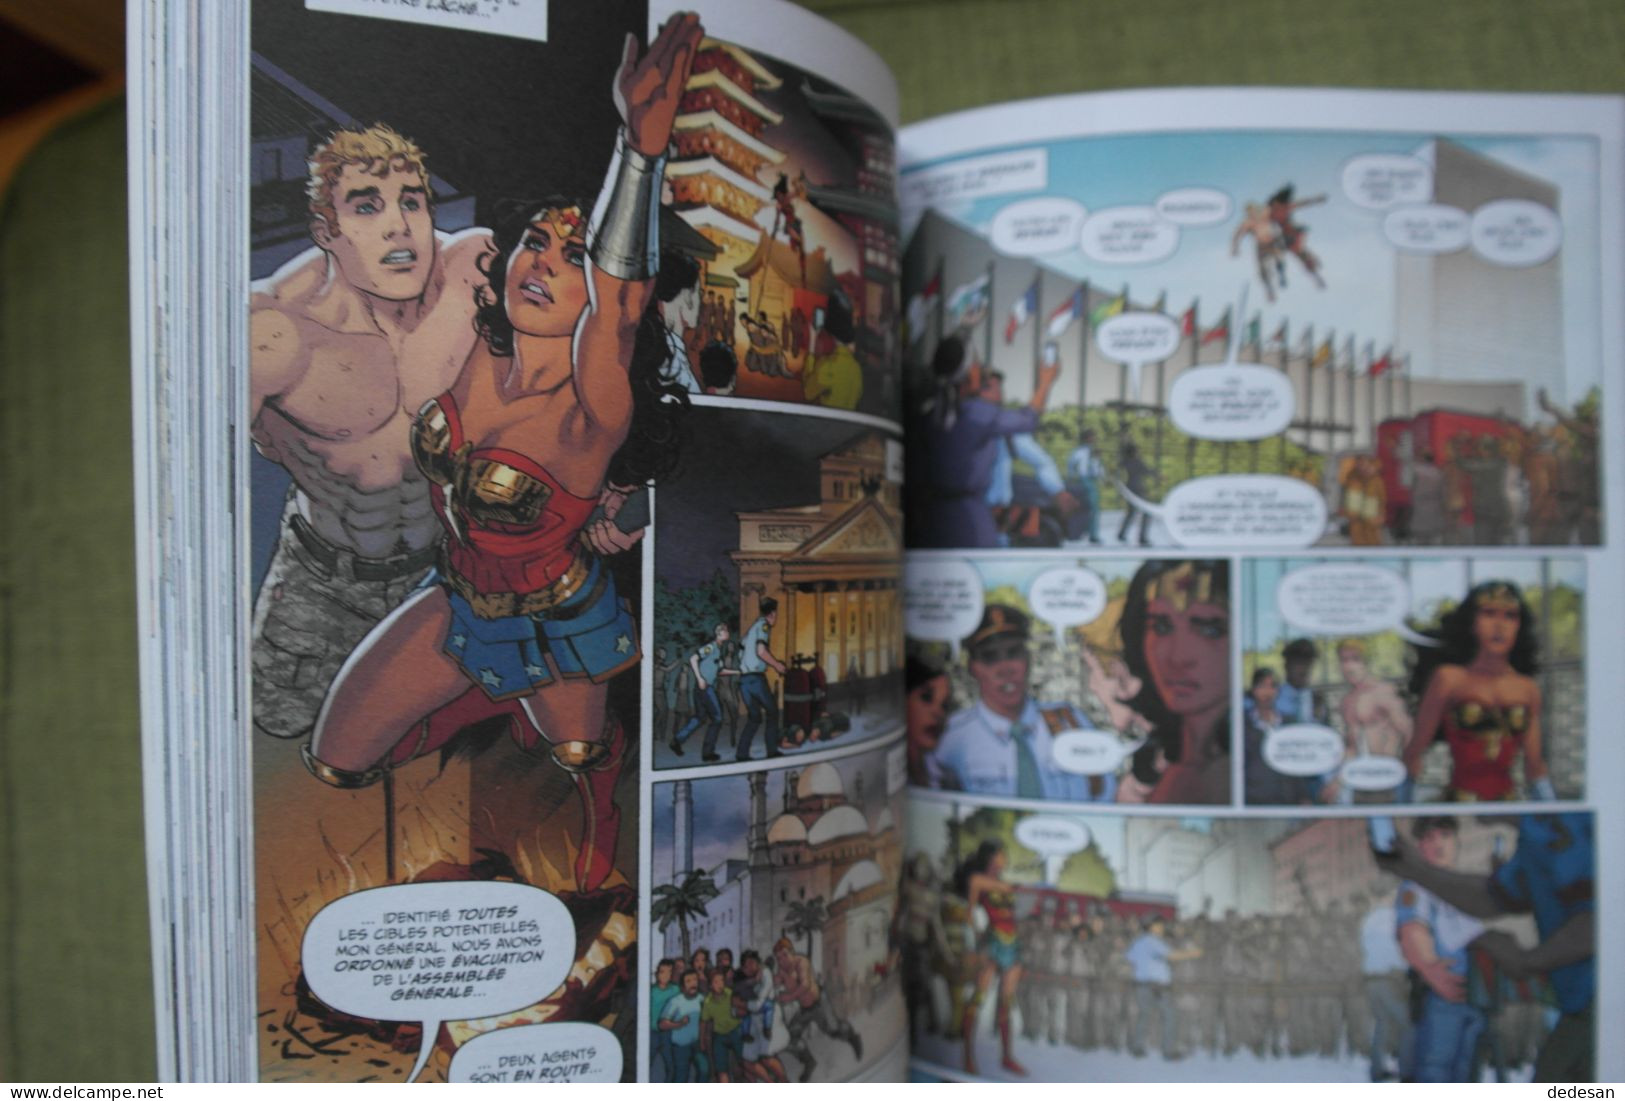 3 Bd Comics Harley Quinn Complètement Marteau, Injustice Année Un, Wonder Woman Année Un - Bücherpakete